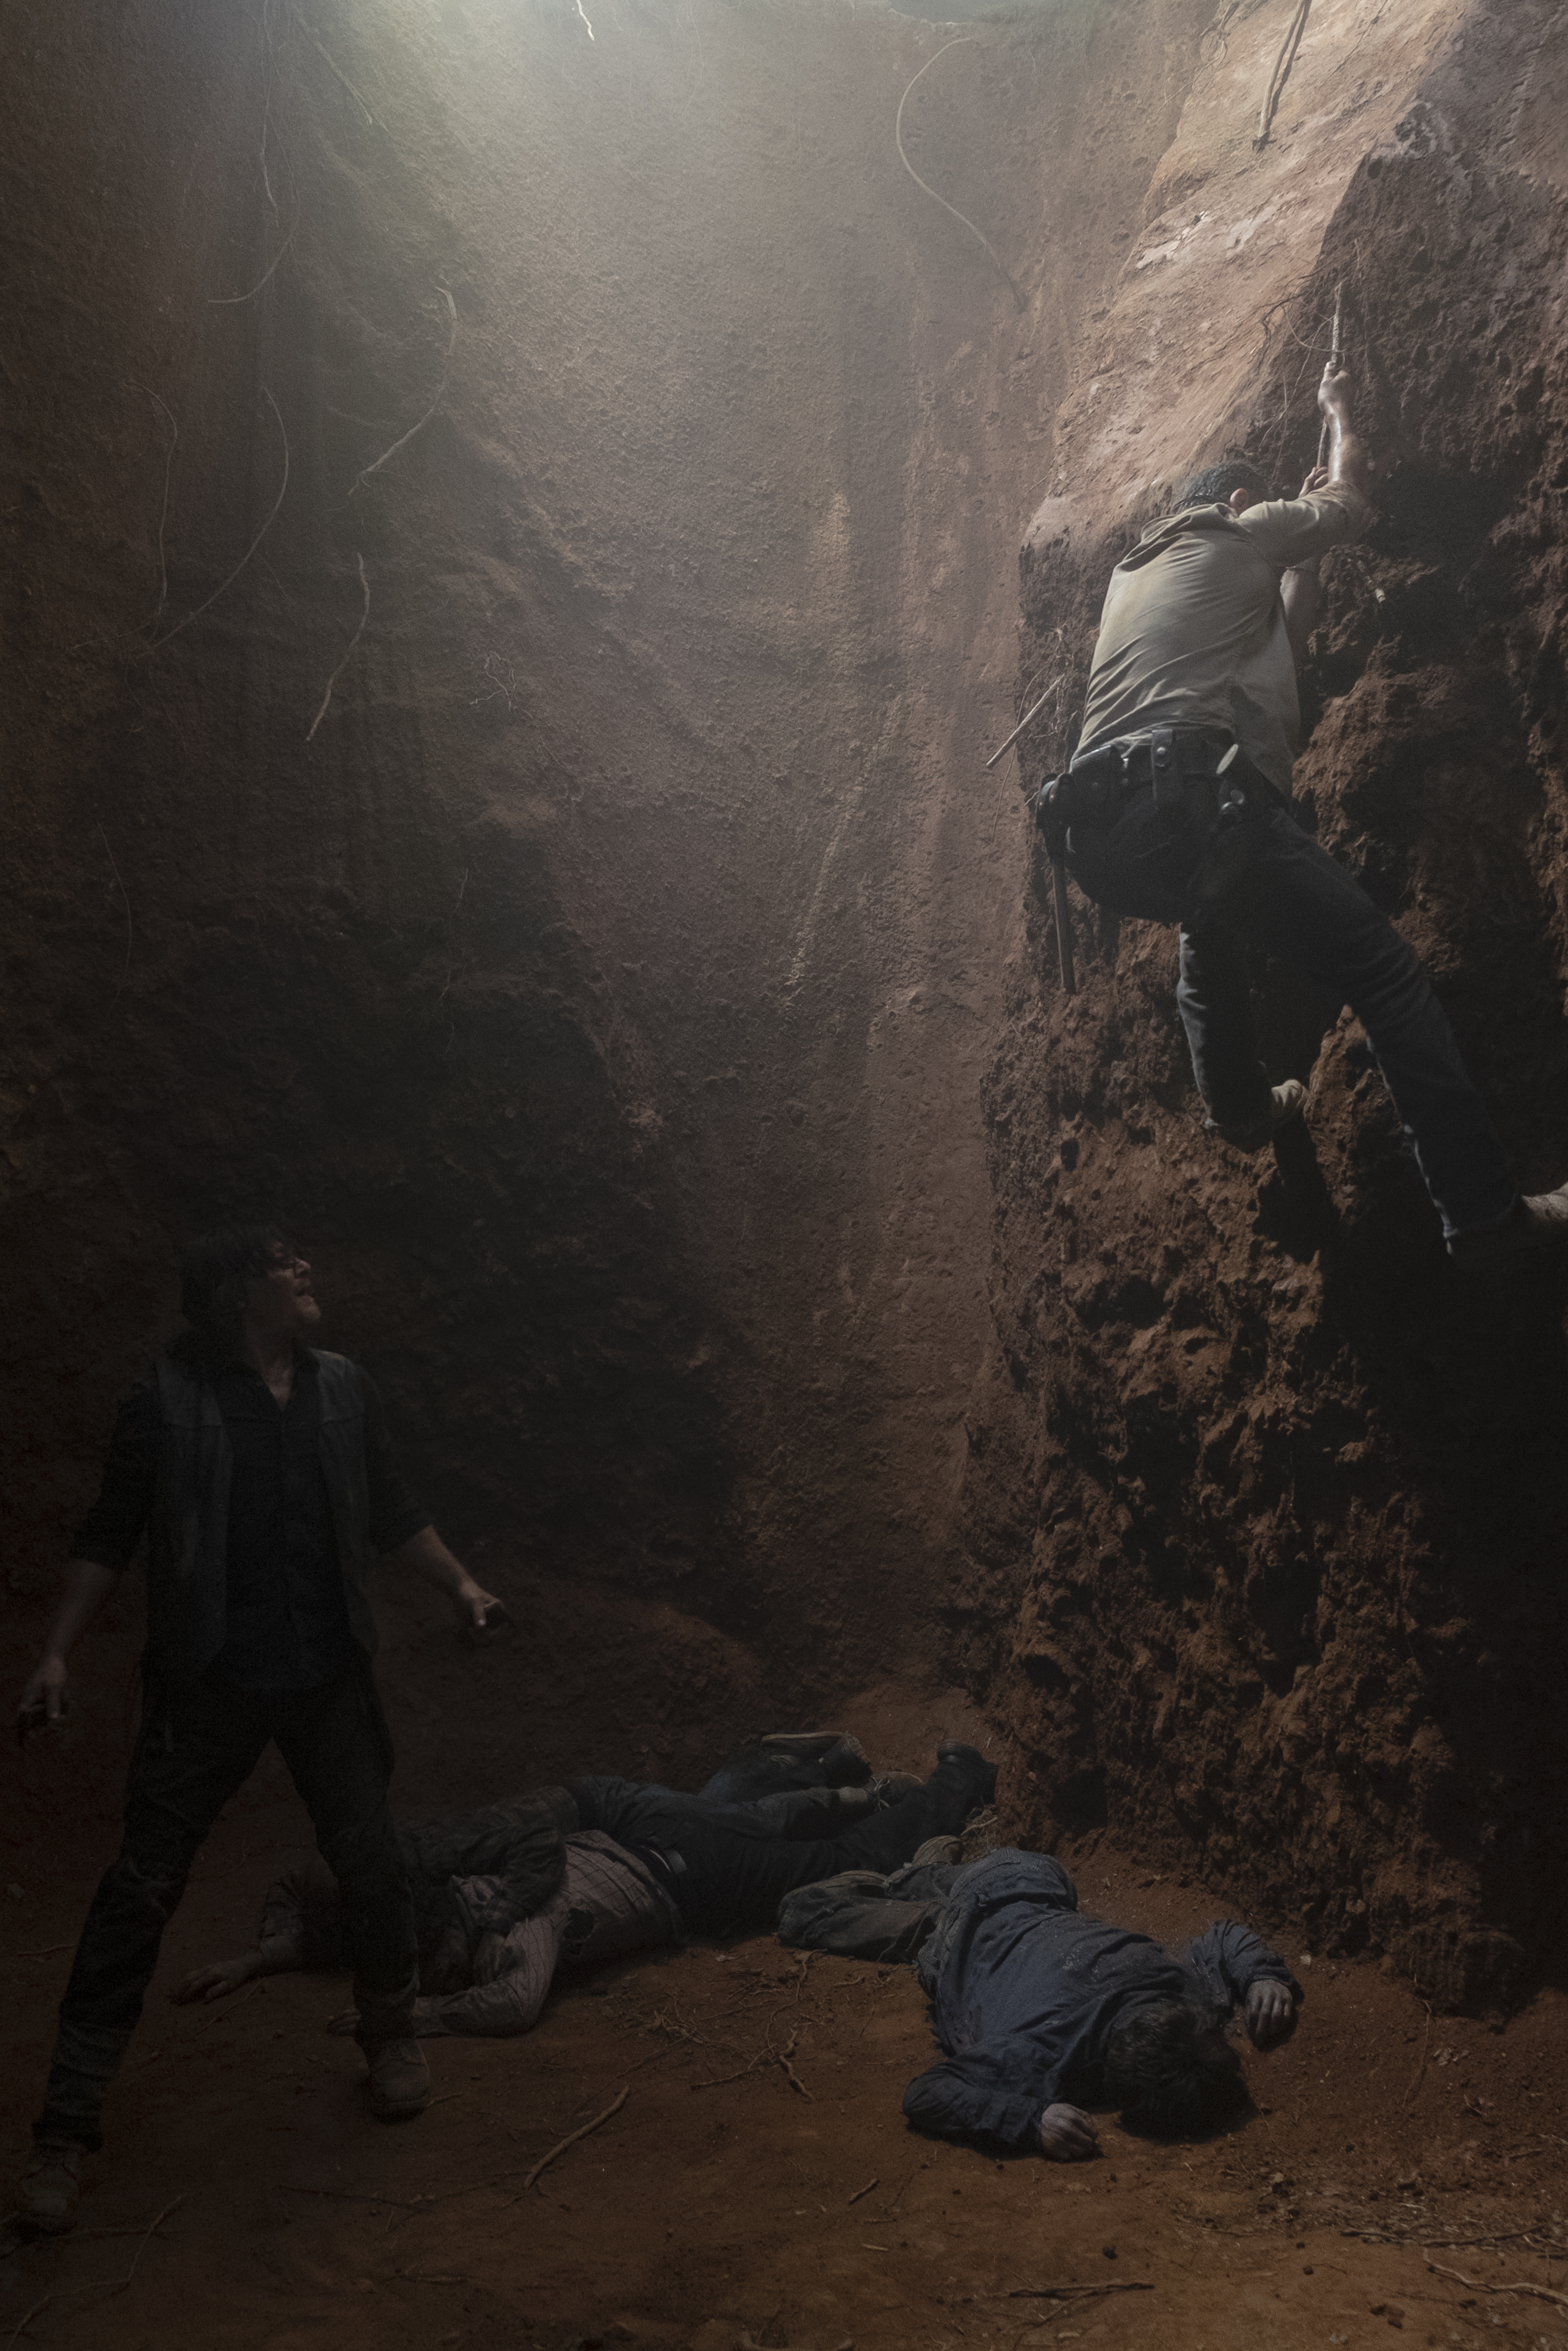 Rick Grimes (Andrew Lincoln) et Daryl Dixon (Norman Reedus) collaborent pour se sortir de leur piège - The Walking Dead - Saison 9, Épisode 4 - Crédit photo : Gene Page/AMC